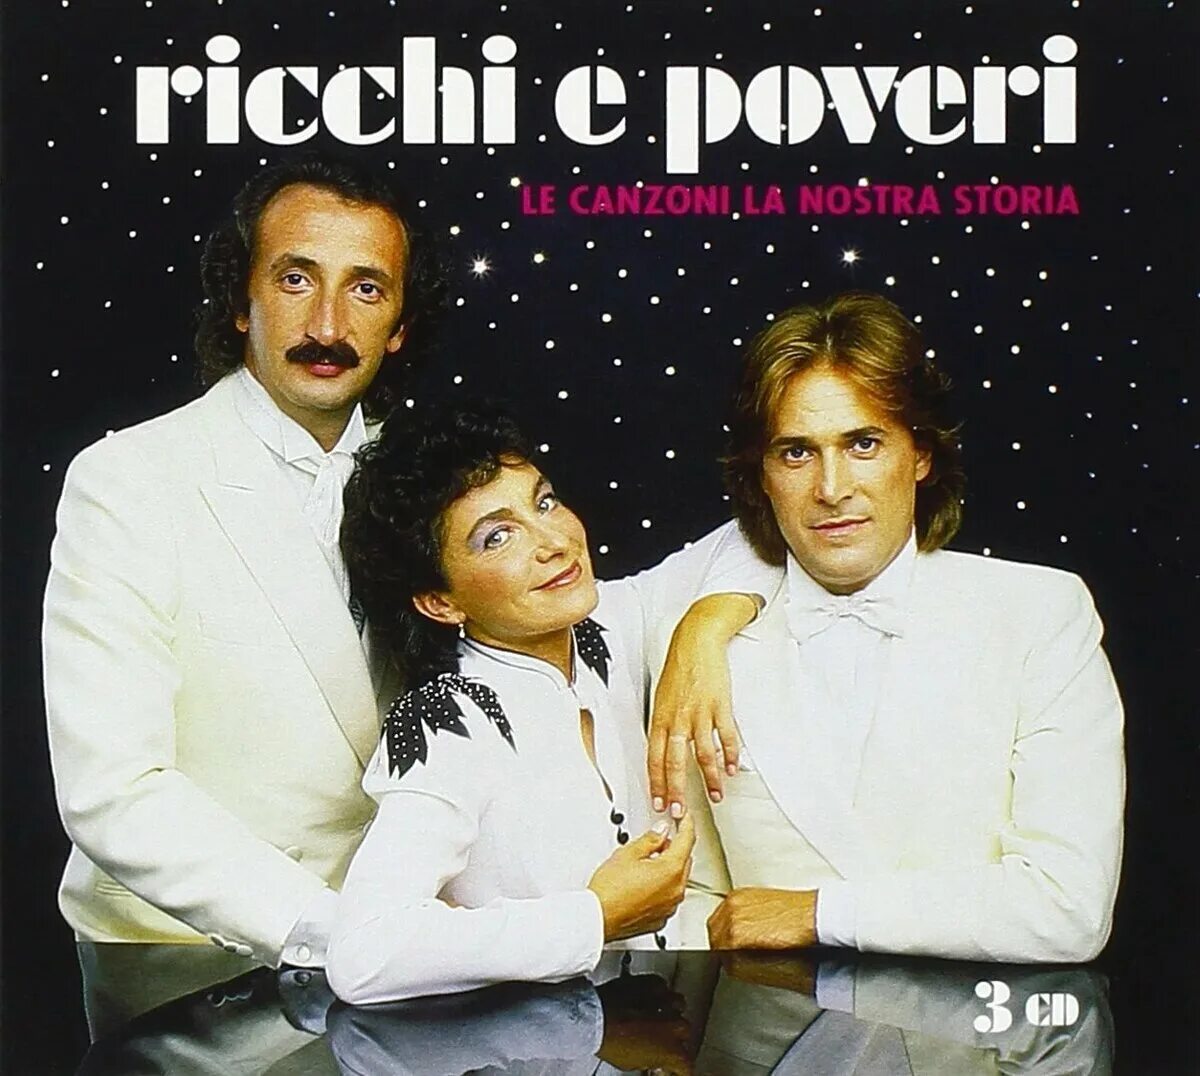 Рикке э повери песни. Группа Ricchi e Poveri. Группа Ricchi e Poveri сейчас. Группа Рики и повери. Итальянская группа Рикки и повери.